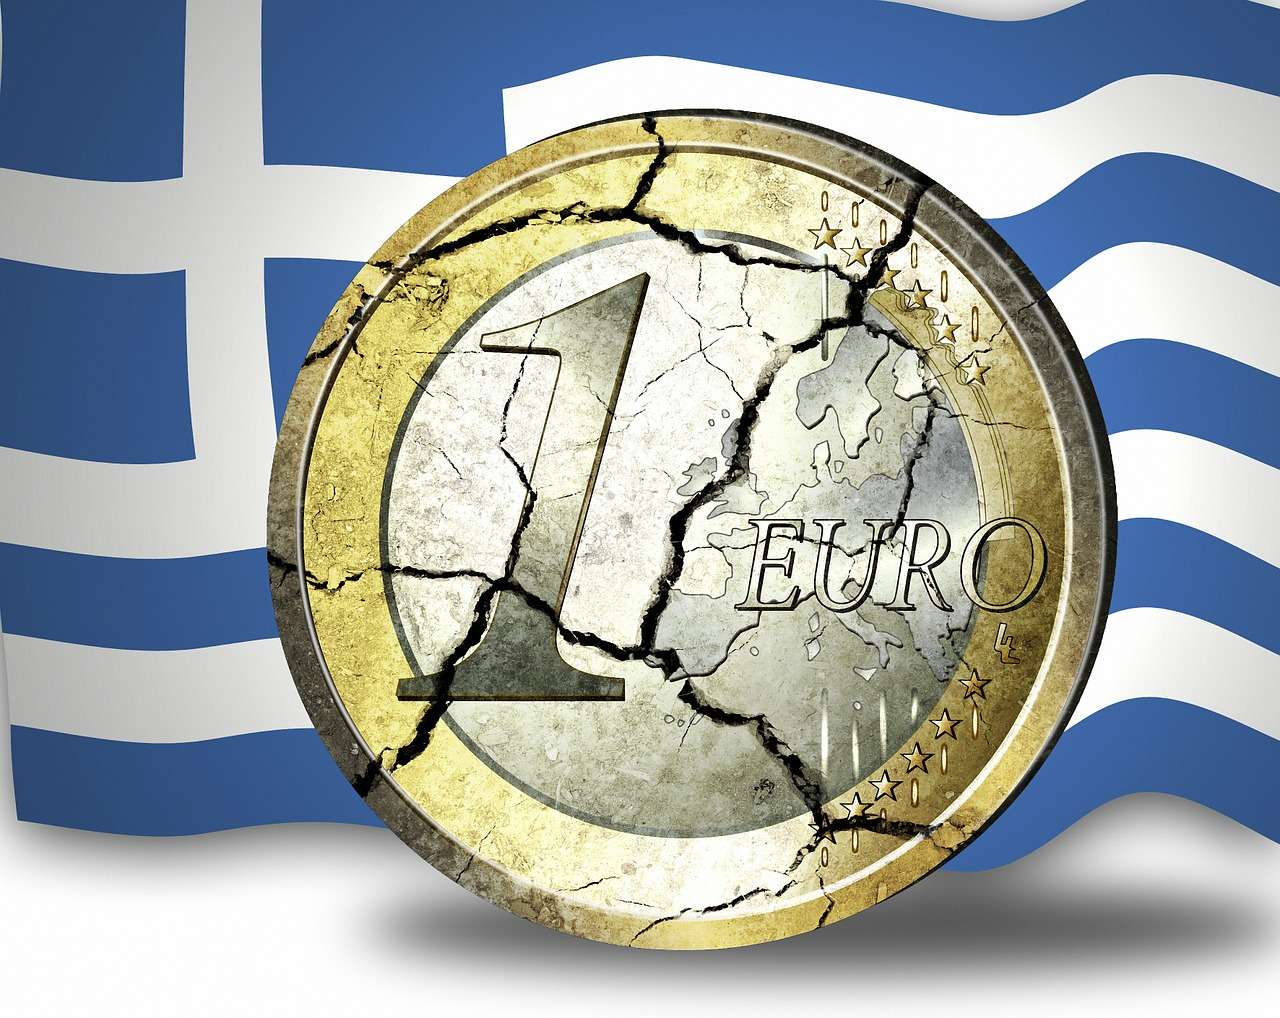 Αναγκαία μια Ειδική Σχέση της Ελλάδας εντός ΕΕ και Ευρωζώνης την επαύριον της πανδημίας 